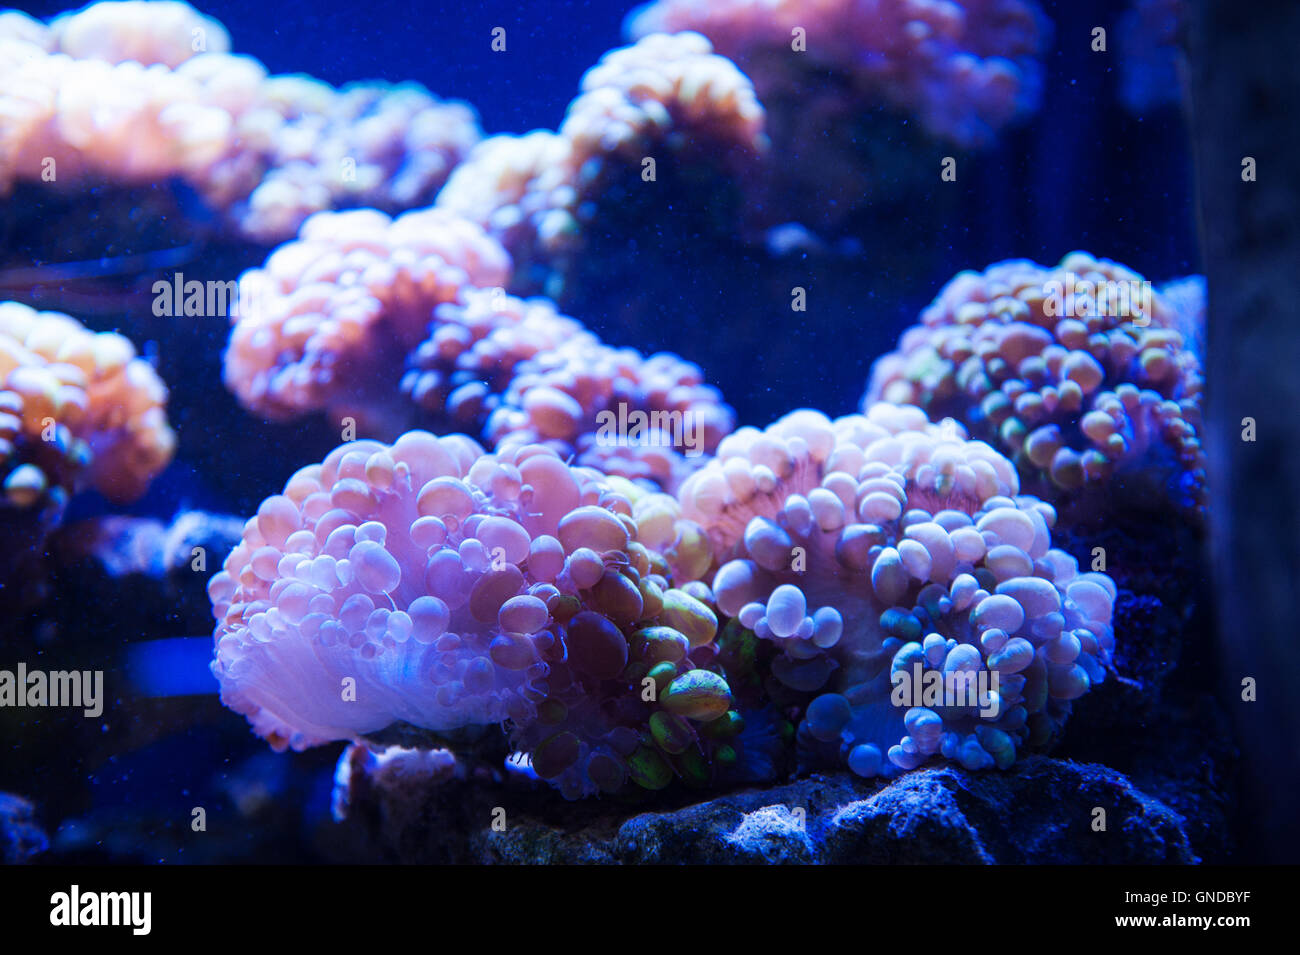 Dream of underwater photography algae in the aquarium Stock Photo